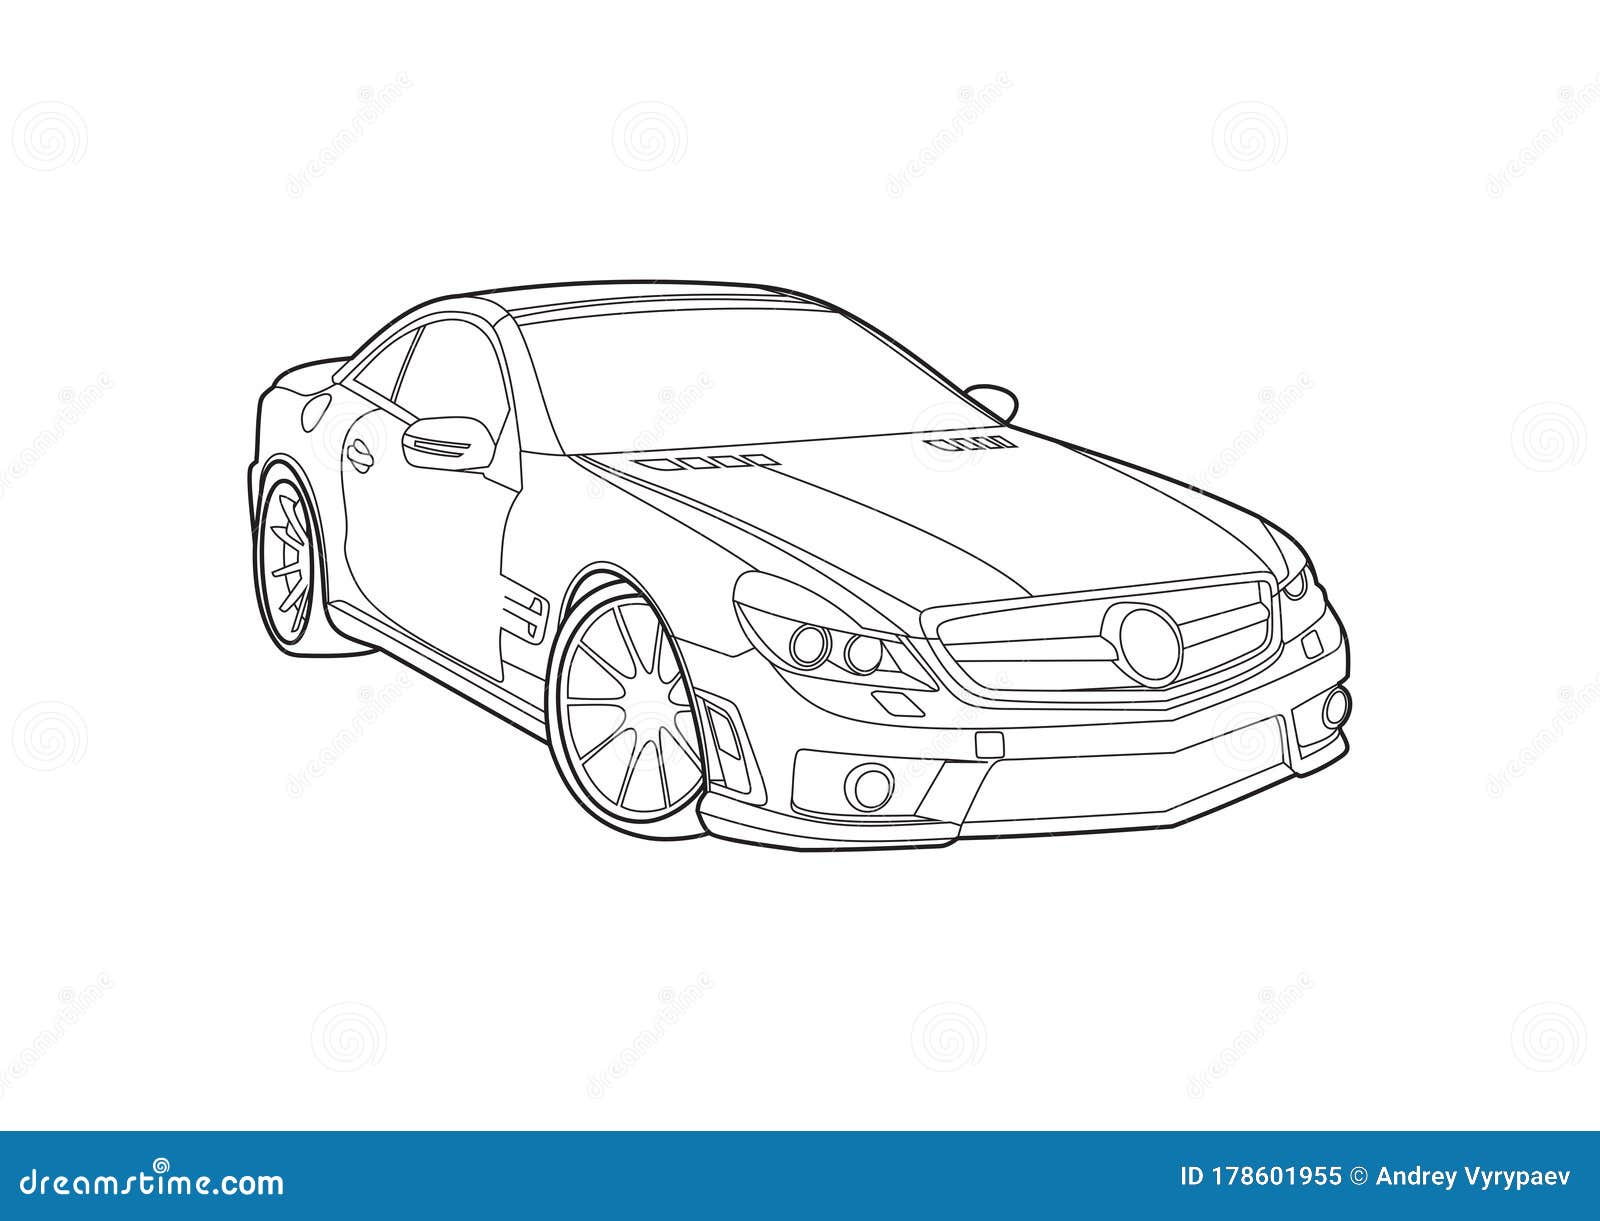 Sketches MercedesBenz SClass Coupe Concept